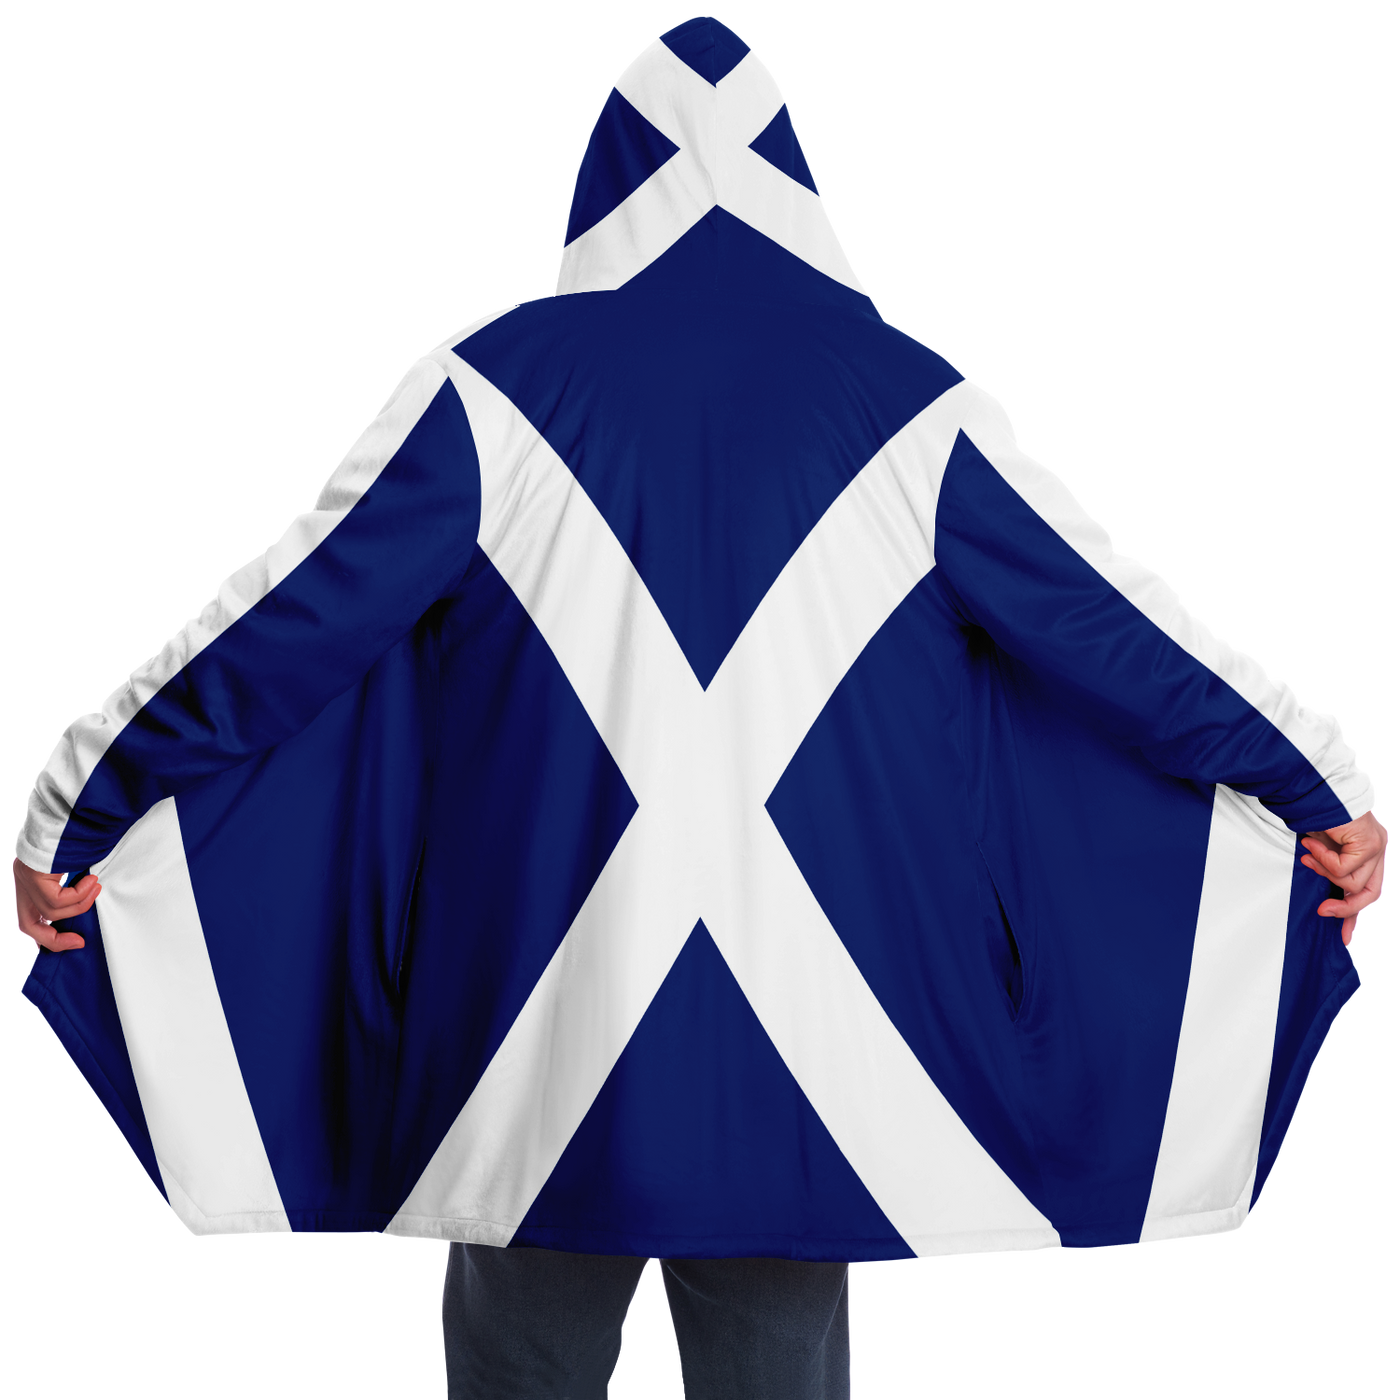 Capa de Microfibra Polar com a Bandeira da Escócia